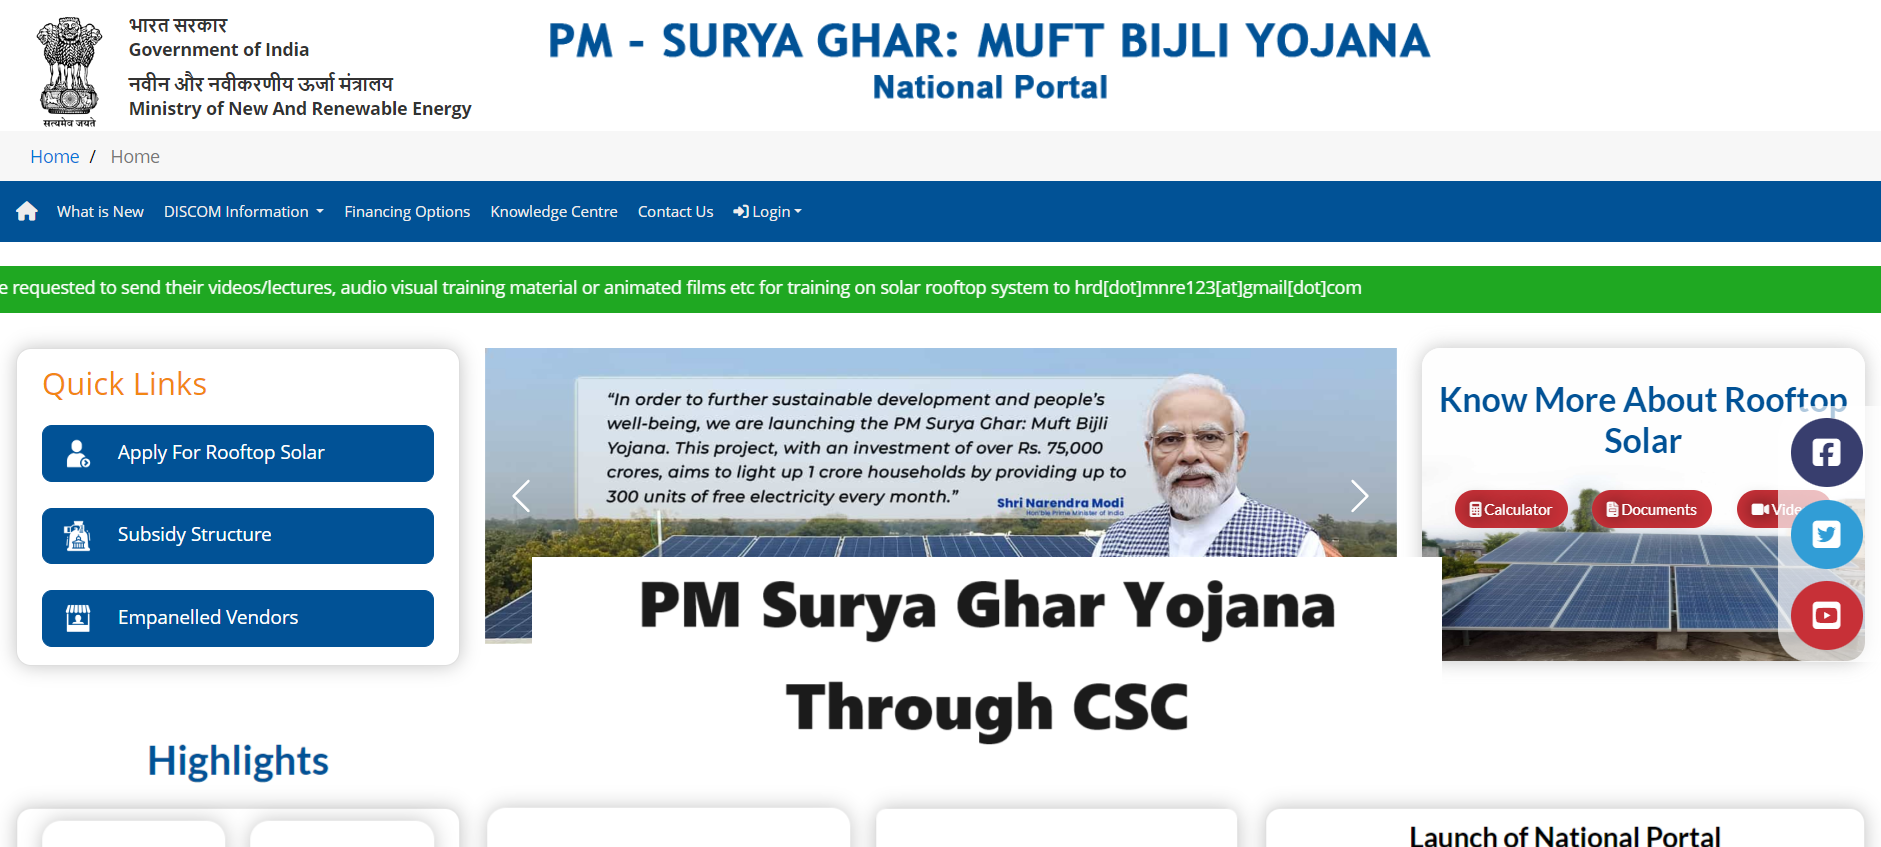 PM Surya Ghar Yojana Through CSC